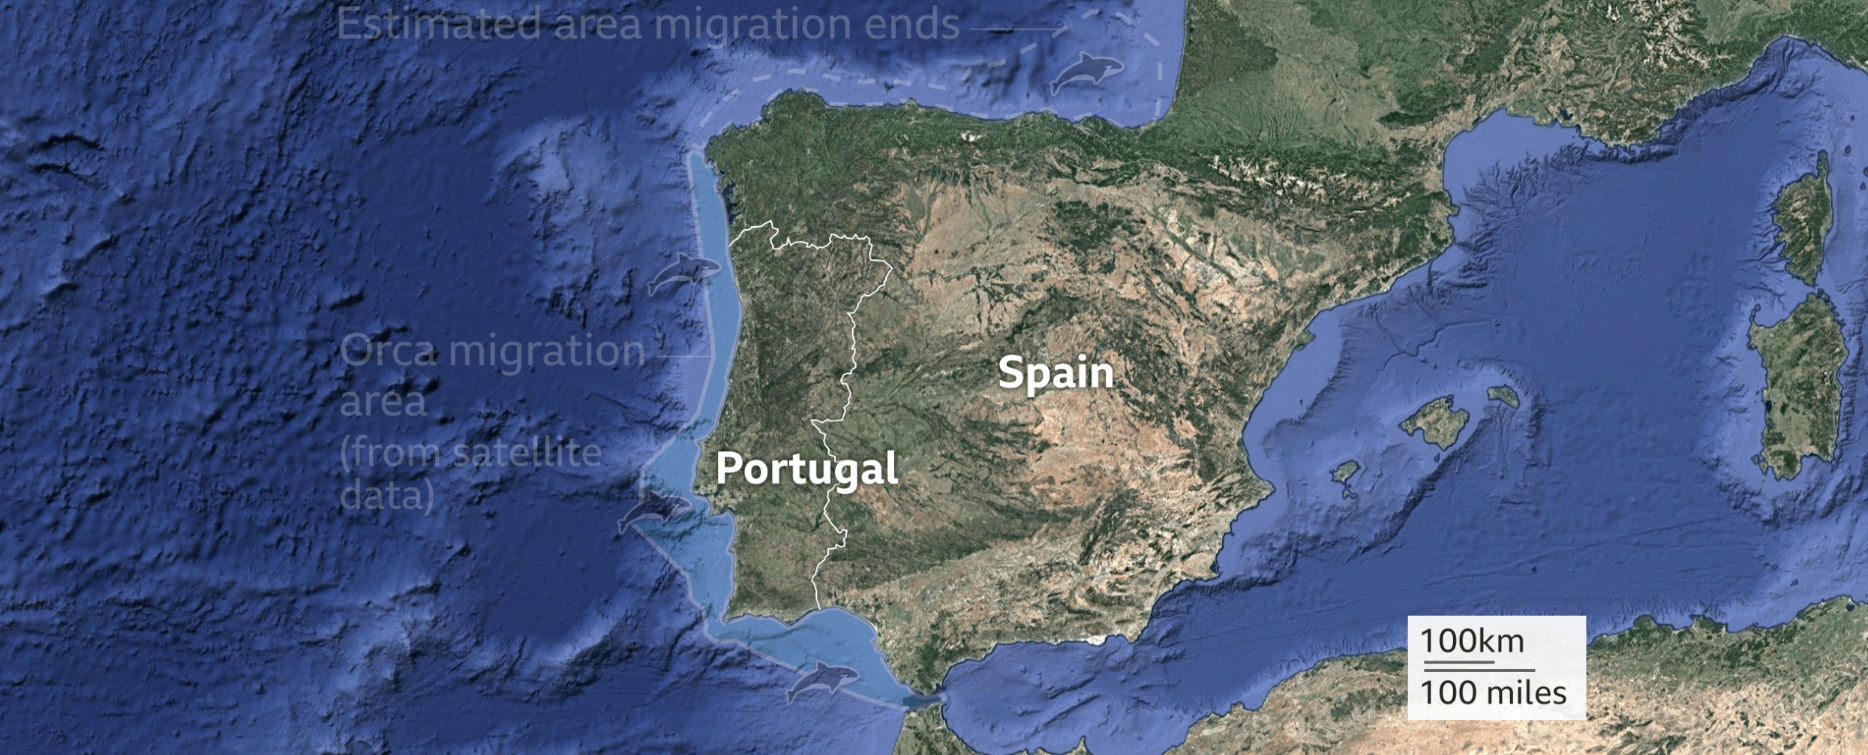 Obszar migracji orek u wybrzeży Hiszpanii i Portugalii. Źródło: BBC News.